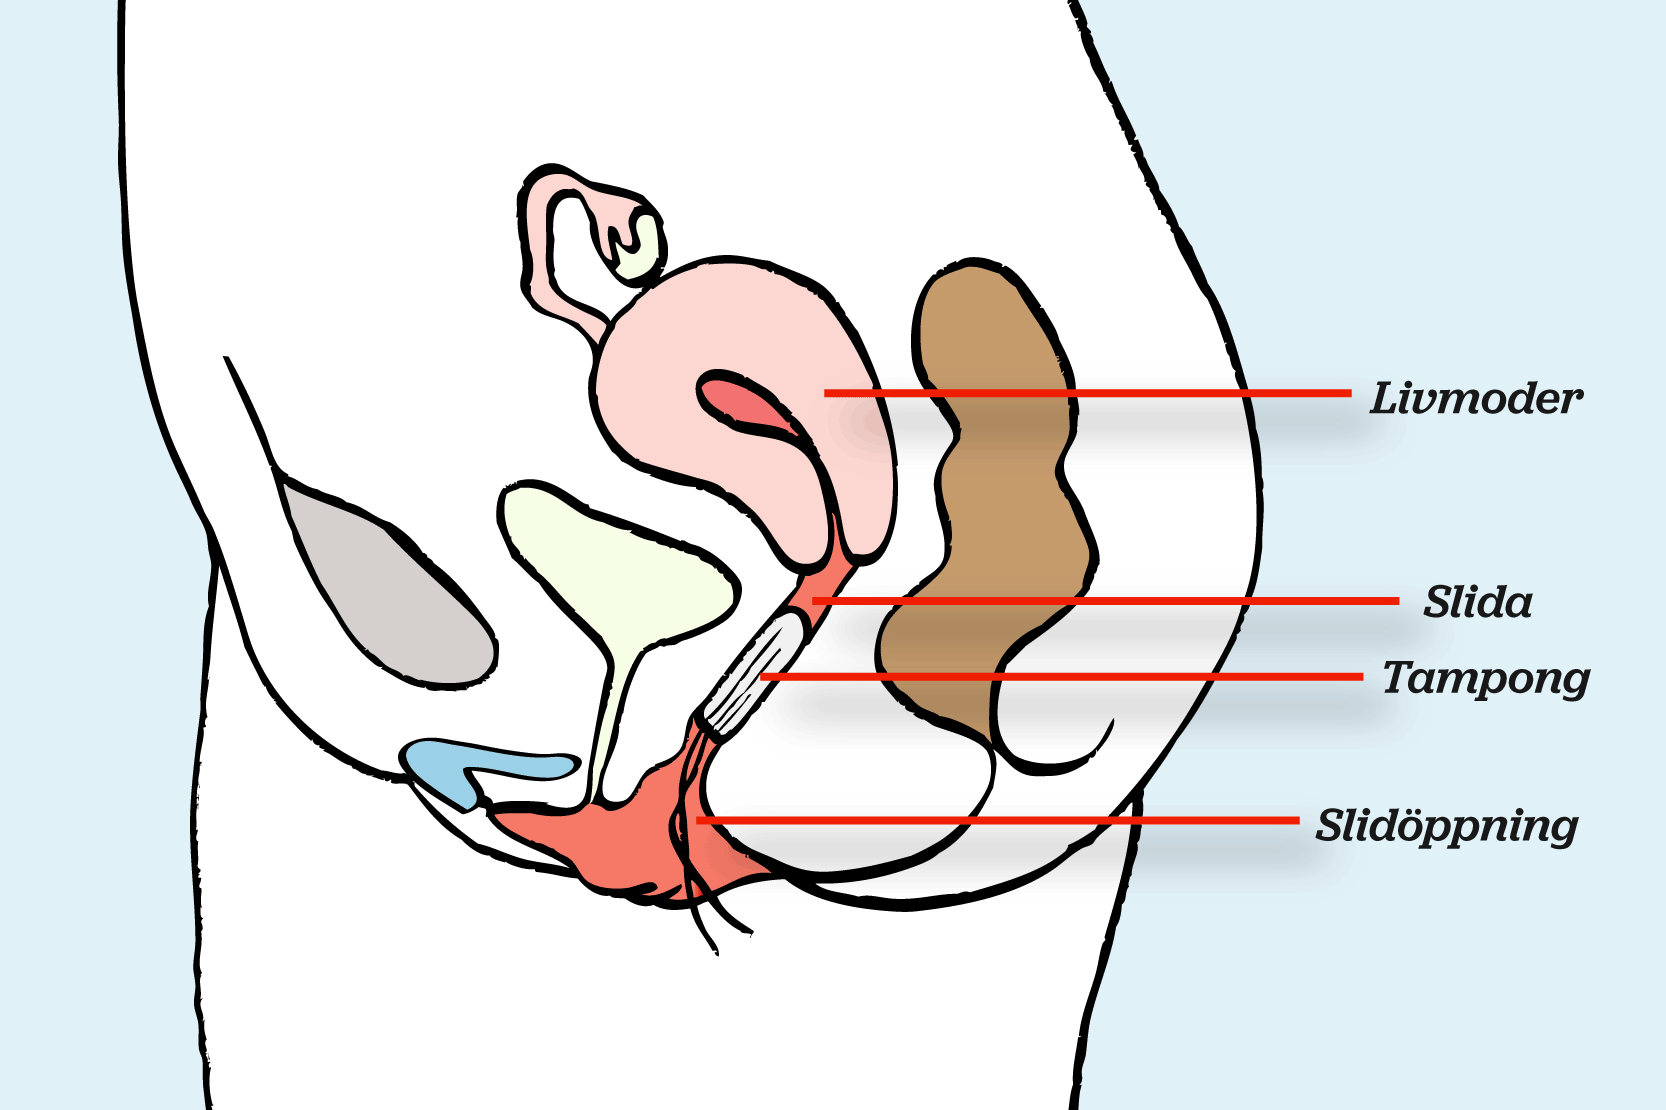 Snippan i genomskärning från sidan så att det syns hur tampongen sitter i slidan. Utsatt med pilar finns livmoder, slida, tampong och slidöppning. Illustration.